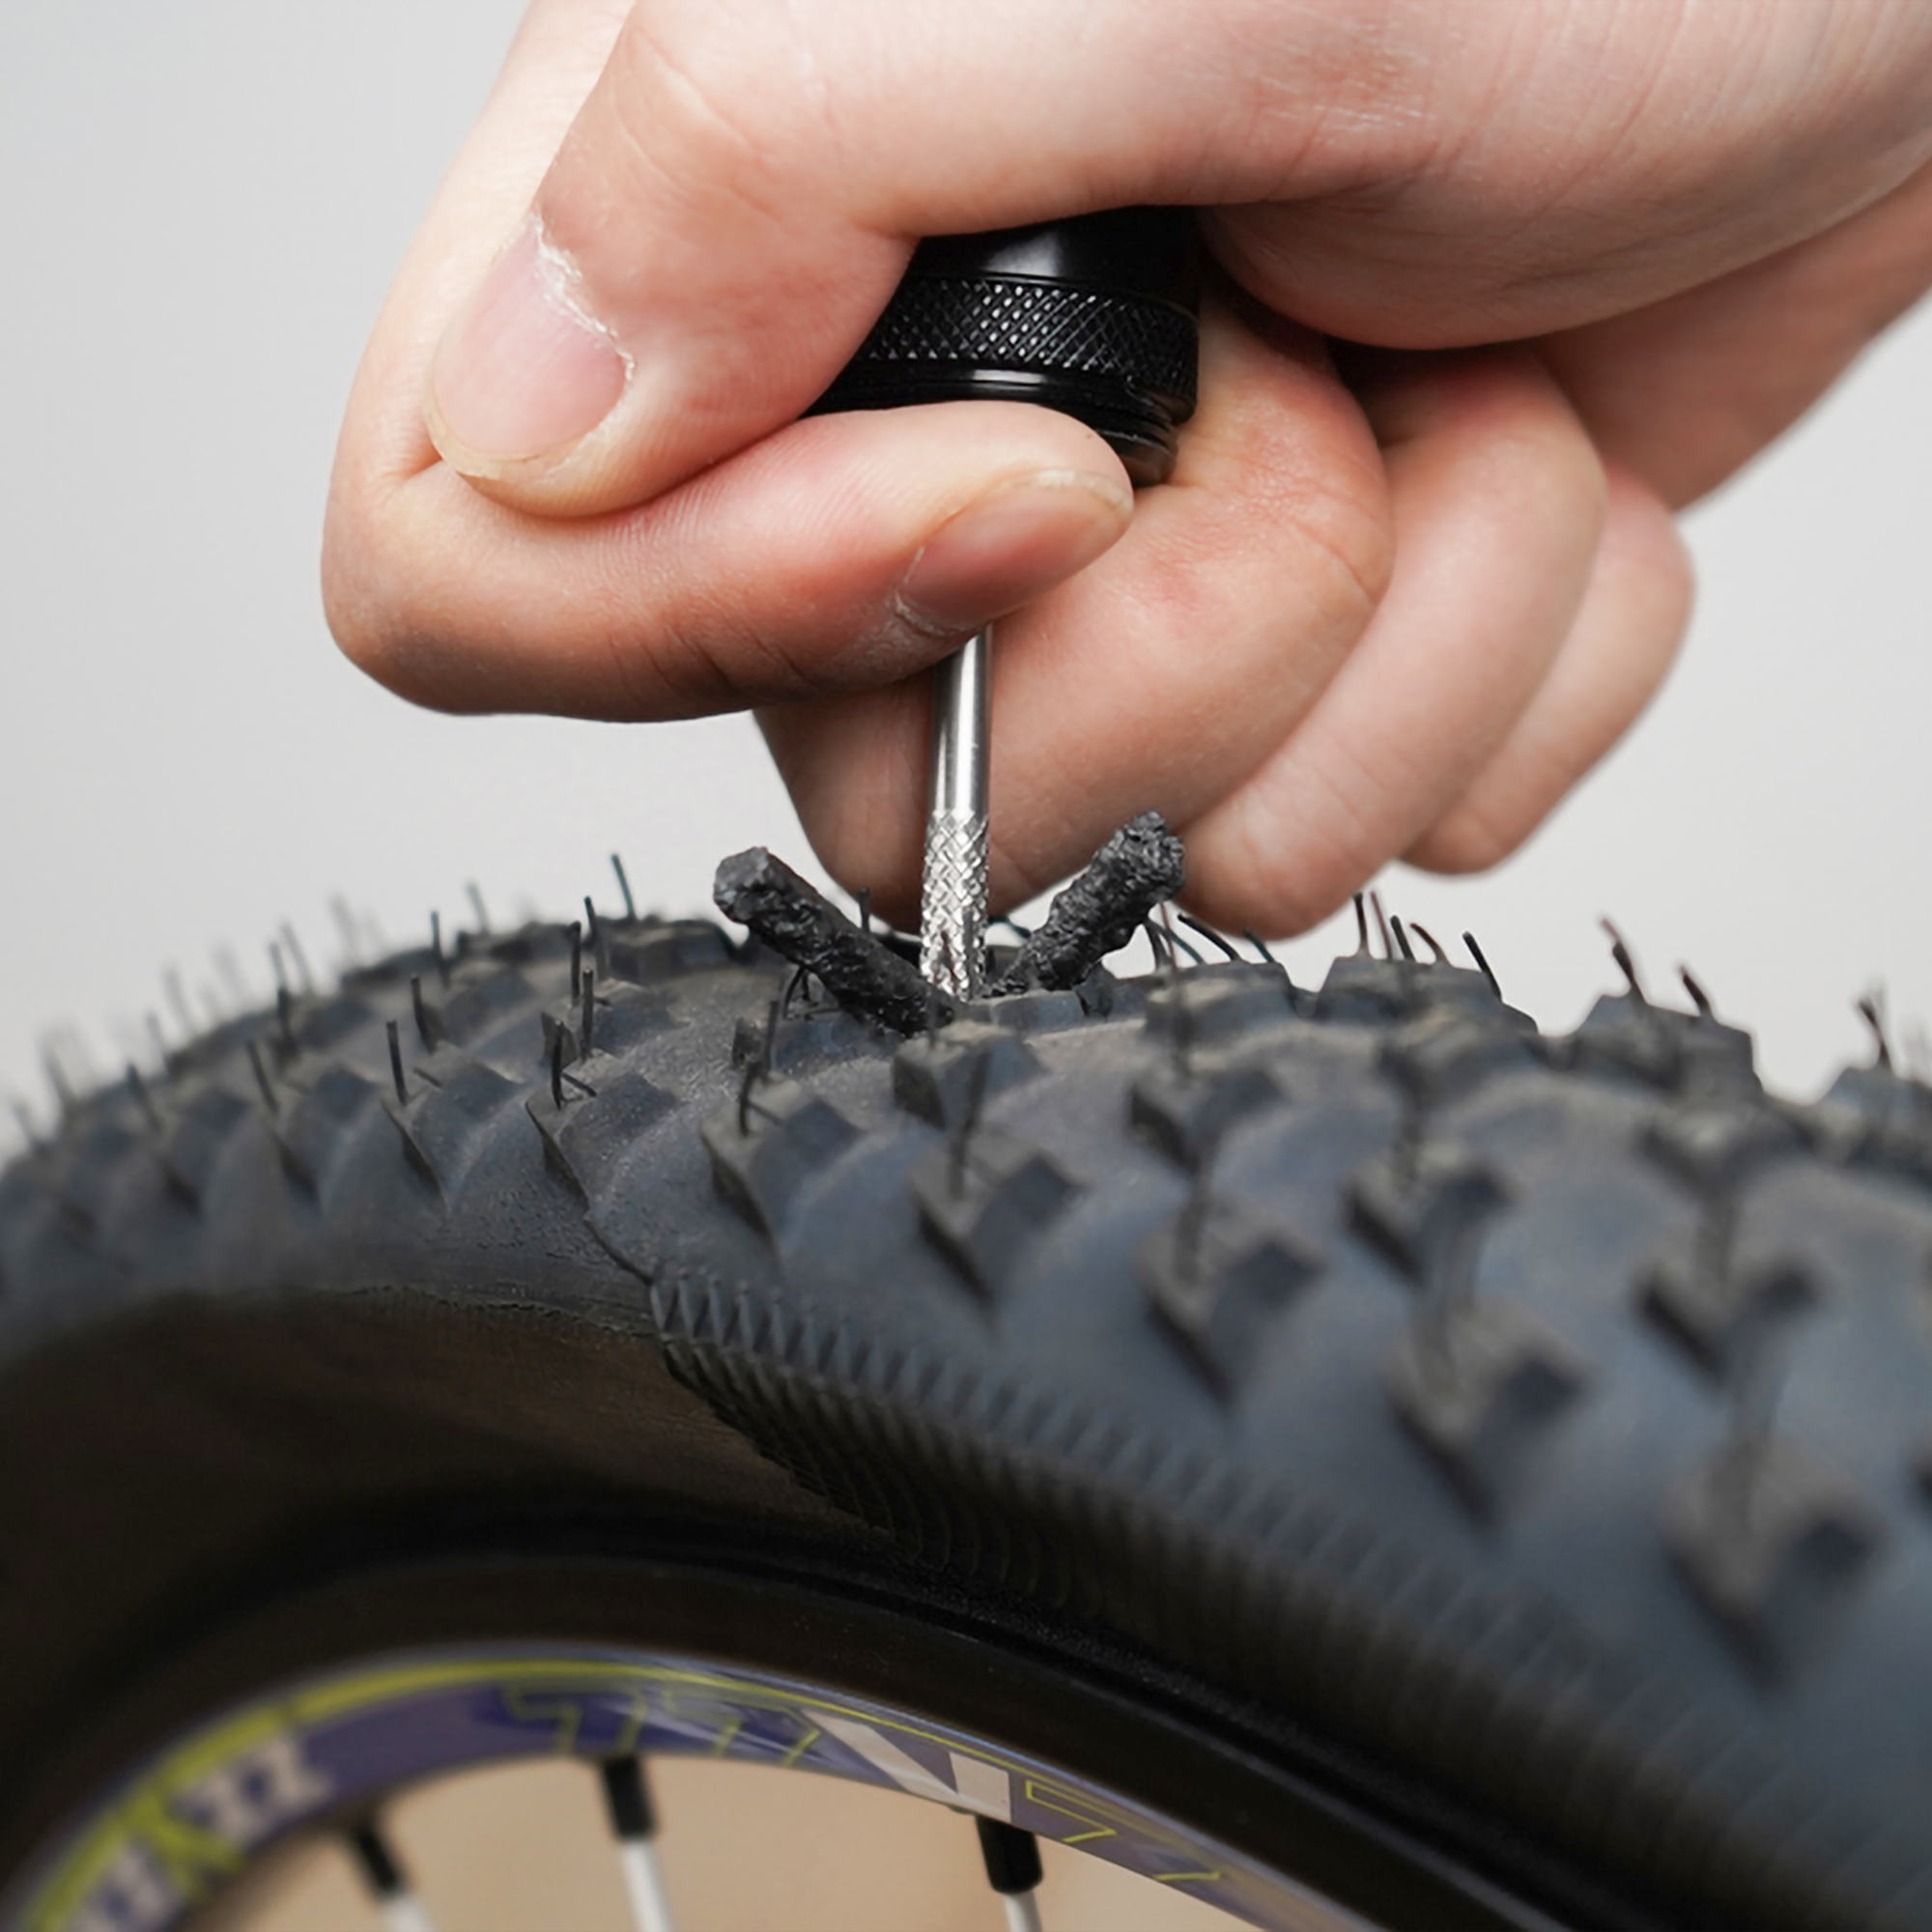 tubeless road tyre repair kit